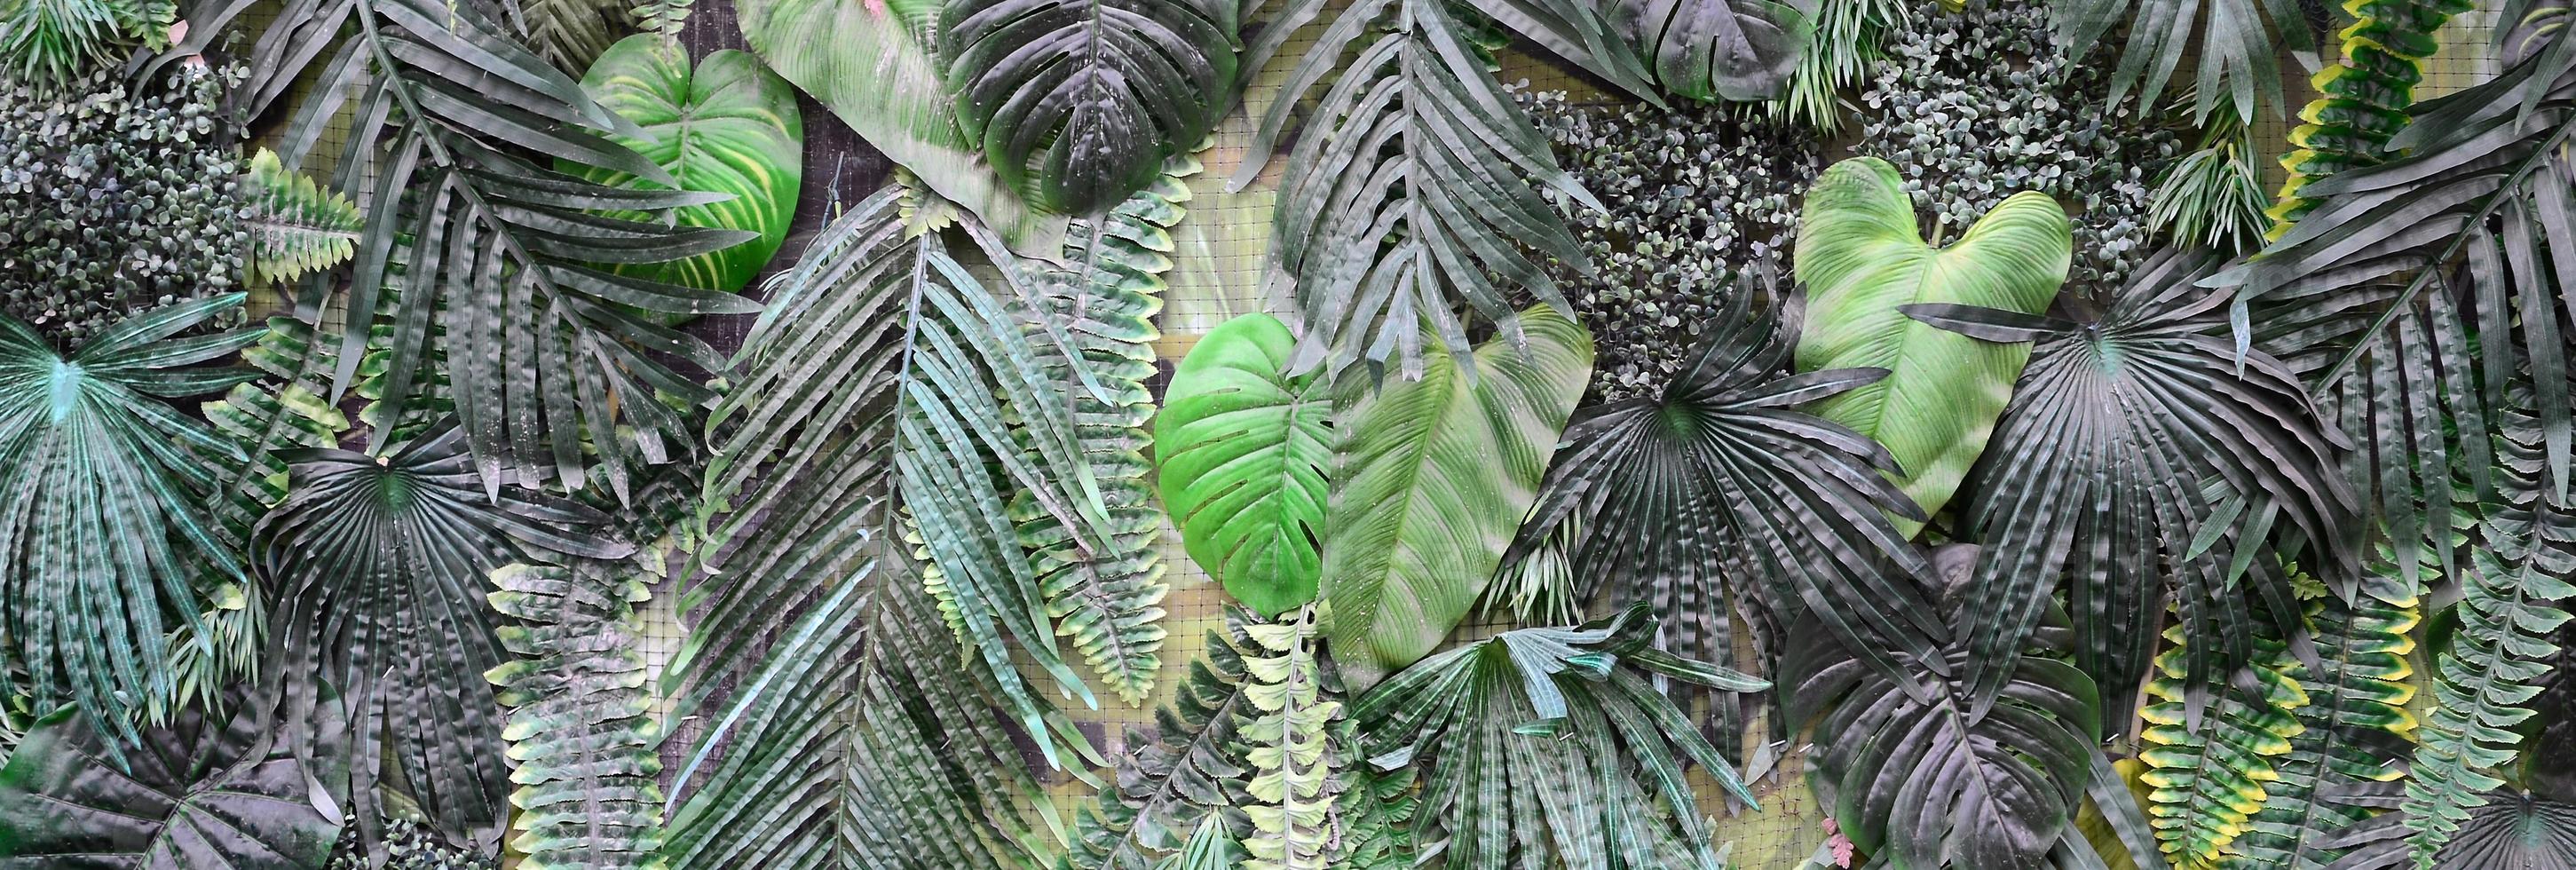 fundo de folhas verdes tropicais, samambaia, palmeira e folha de monstera deliciosa na parede foto